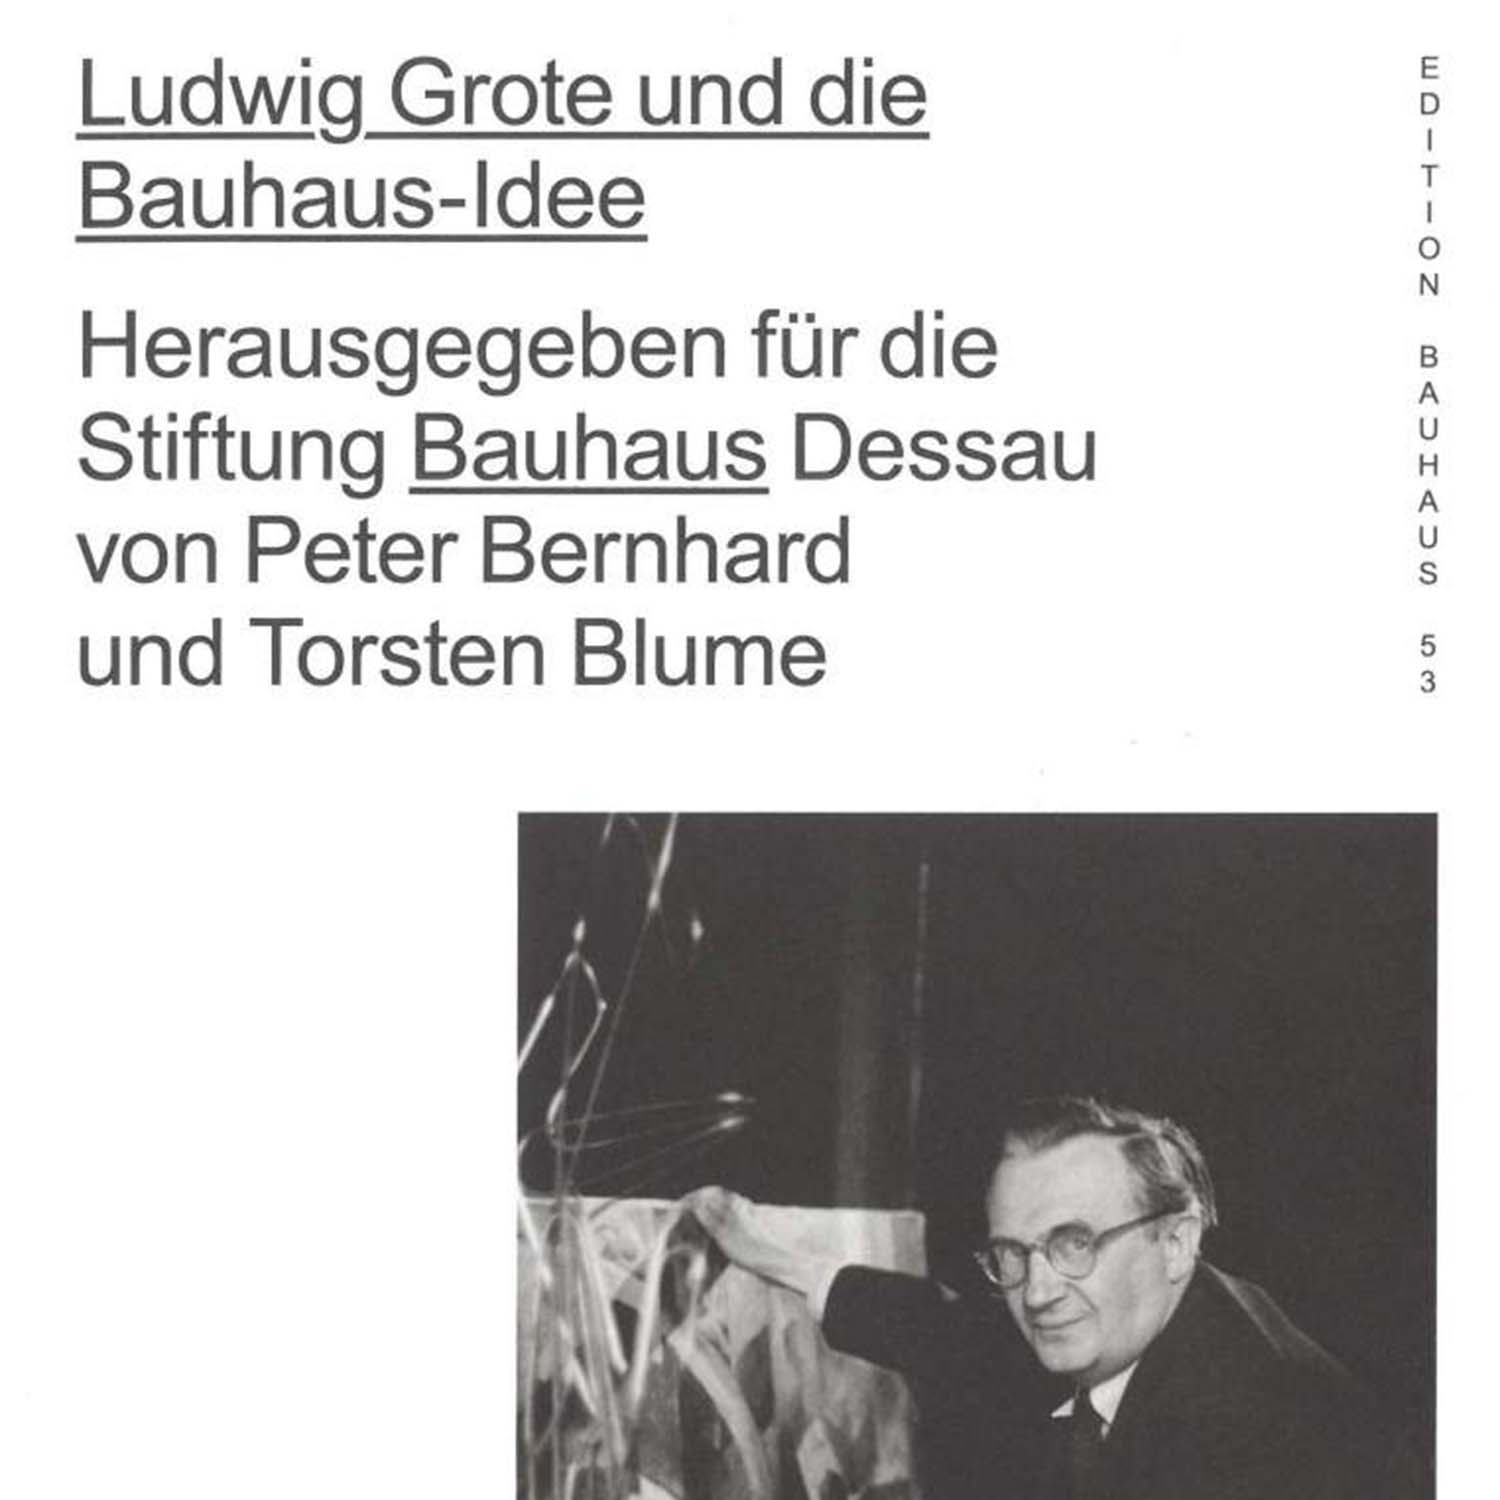 Immagine di Ludwig Grote e l'idea del Bauhaus